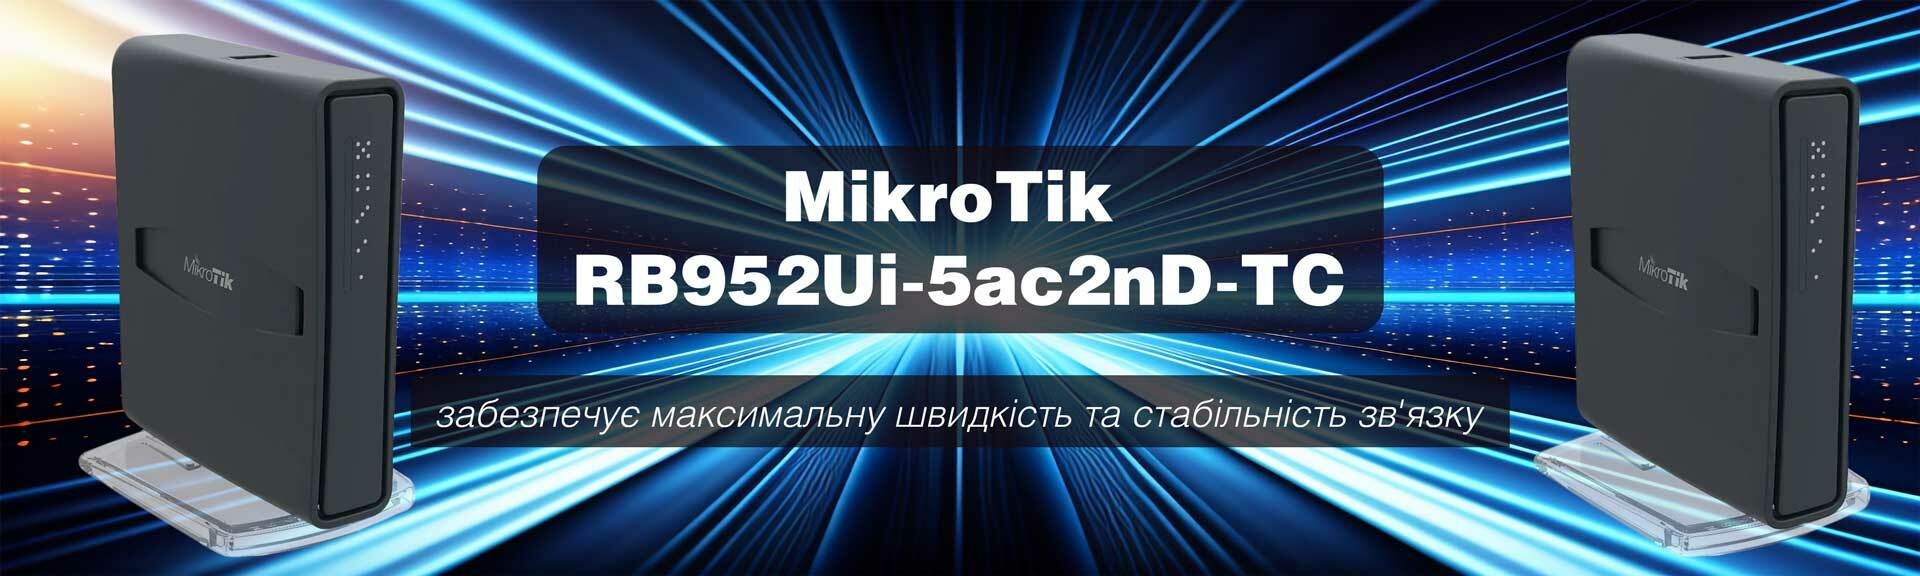 Двухдиапазонная точка доступа MikroTik с 5-портами